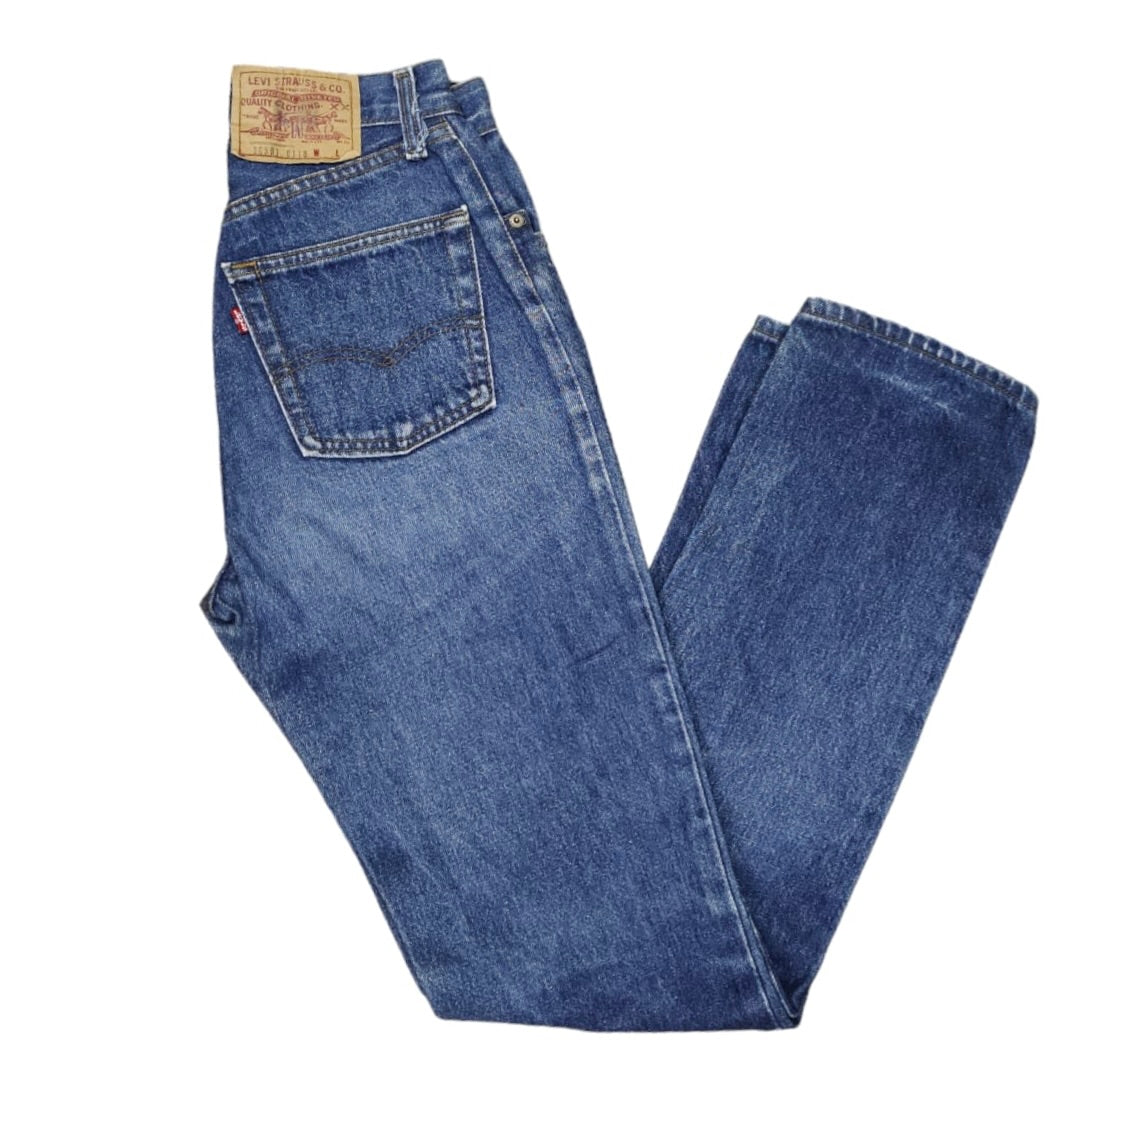 Vintage Levis 501 Blue Jeans (W26)